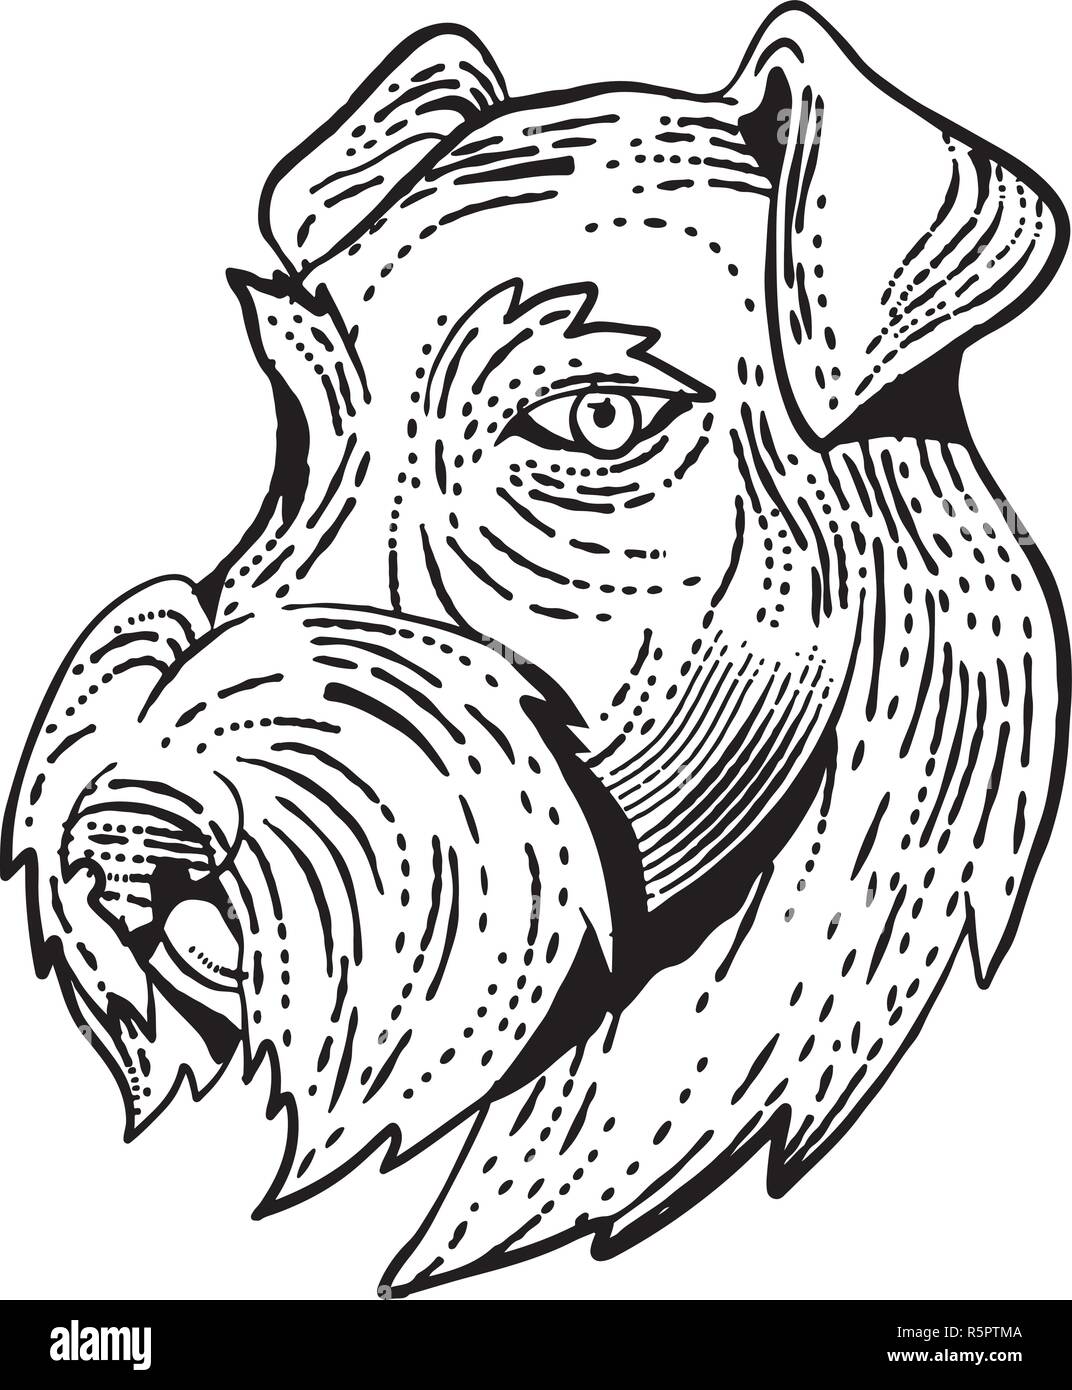 Style gravure illustration du chef de l'Airedale Terrier, Terrier ou Terrier au bord de Bingley, une race de chien de terrier le genre vu de côté fait sur Illustration de Vecteur